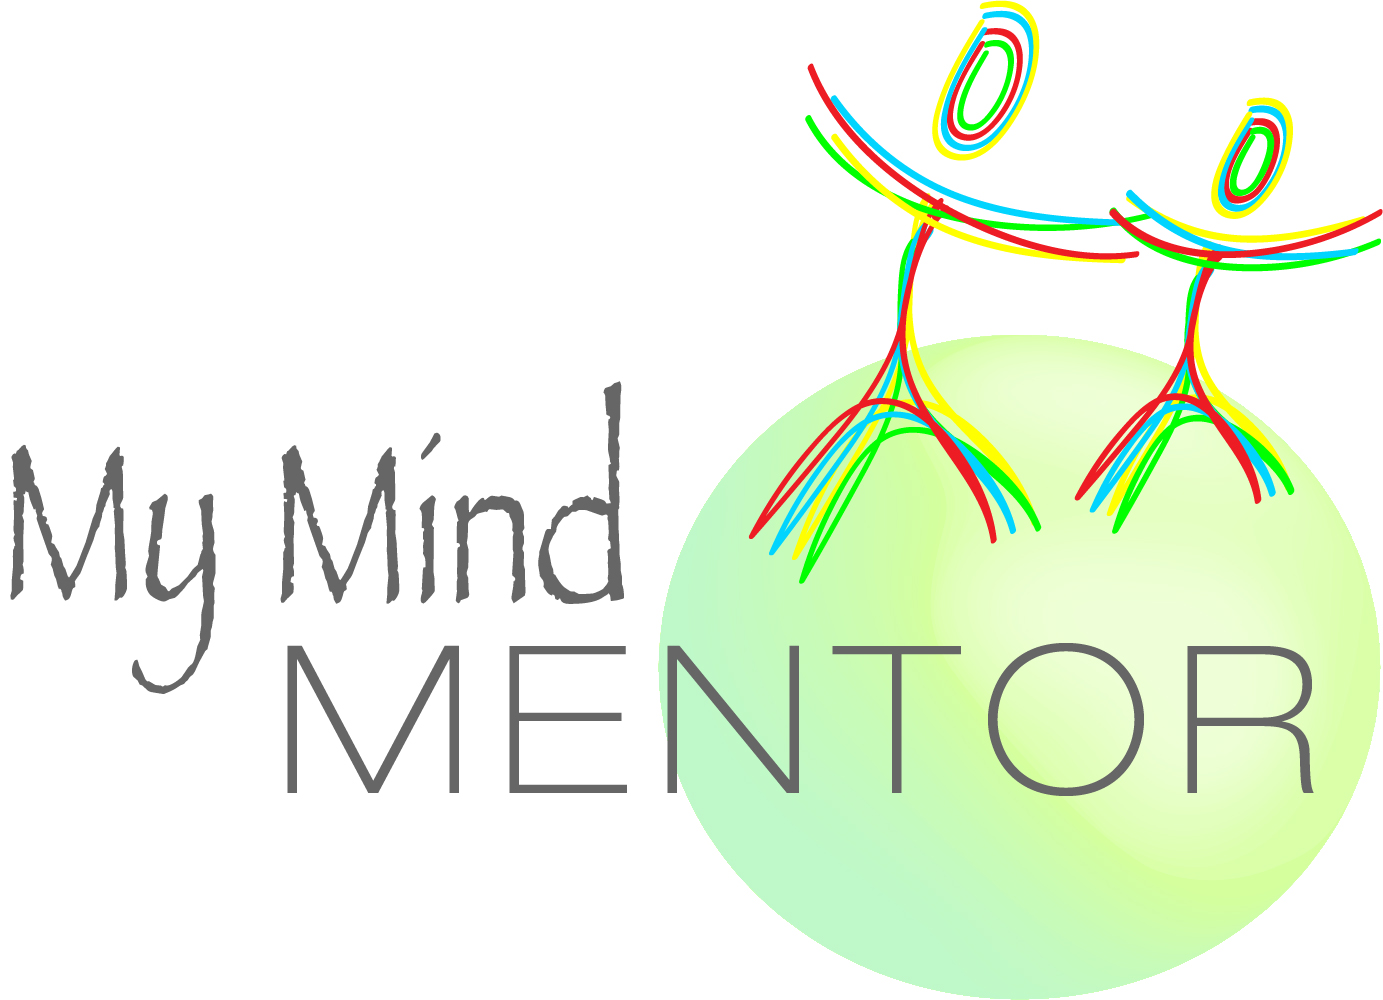 My Mind Mento Logo and Stationery System https://www.aprilkullis.com/portfolio.html